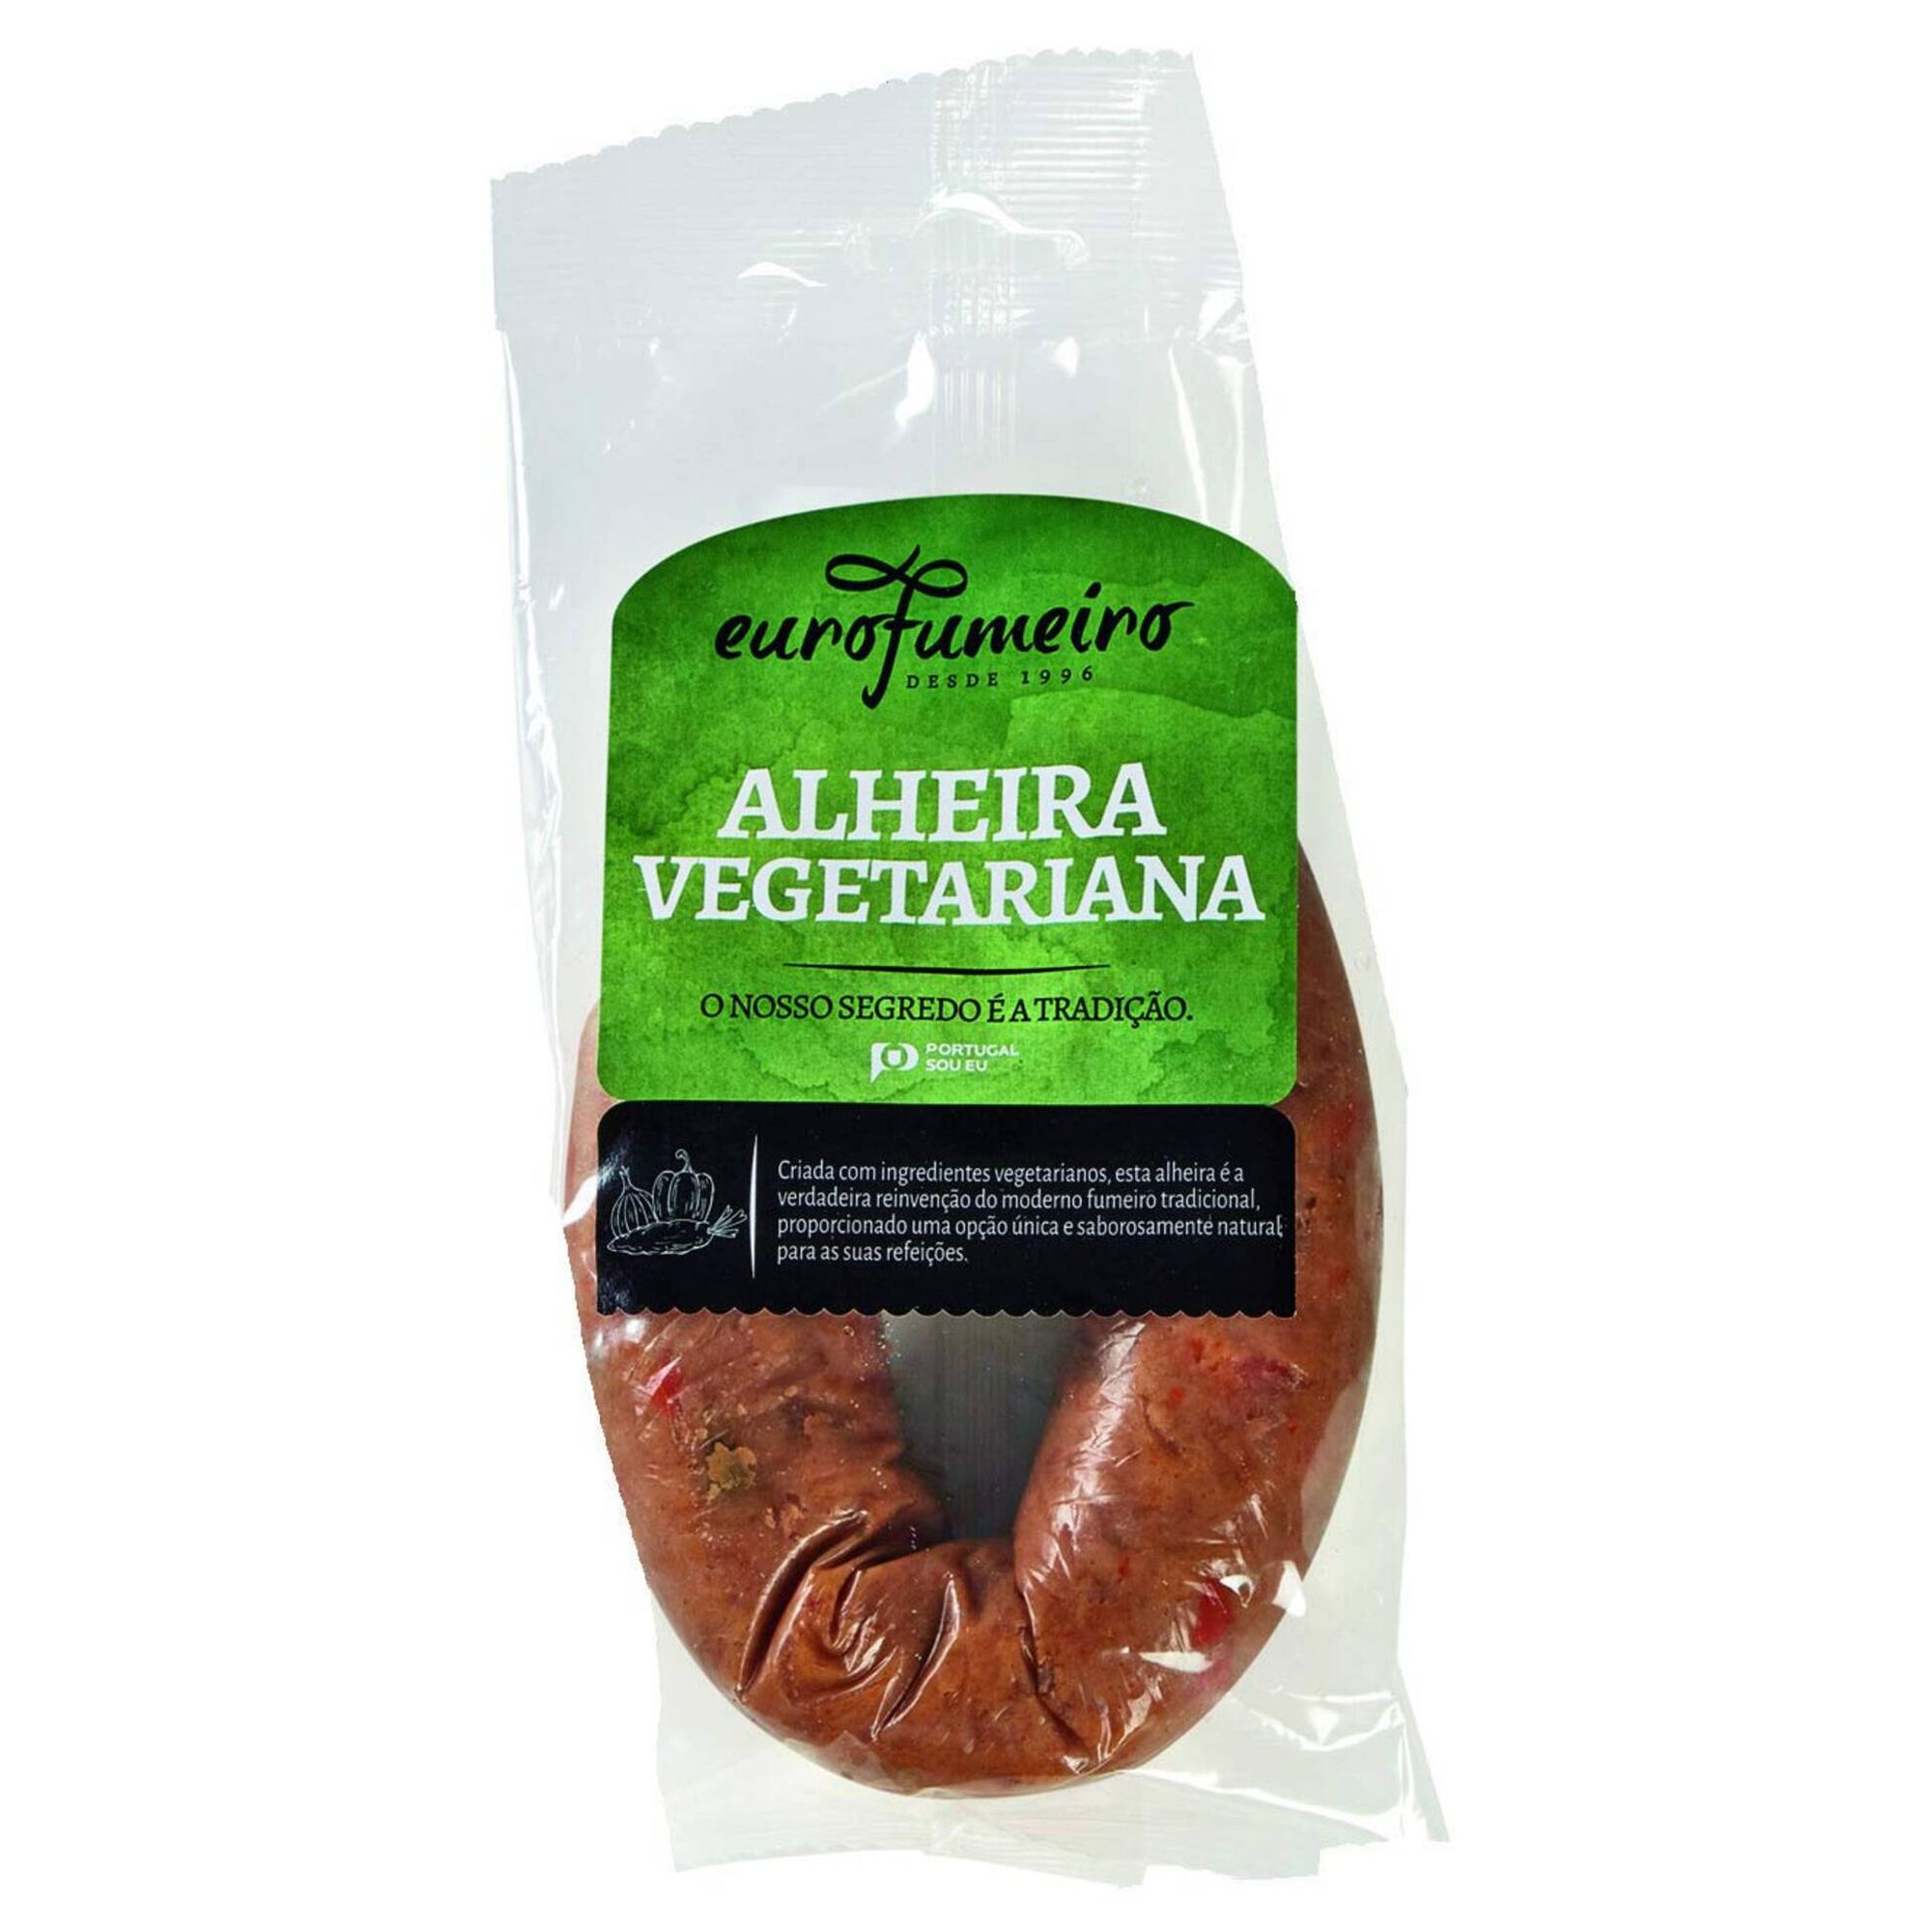 Alheira Vegetariana